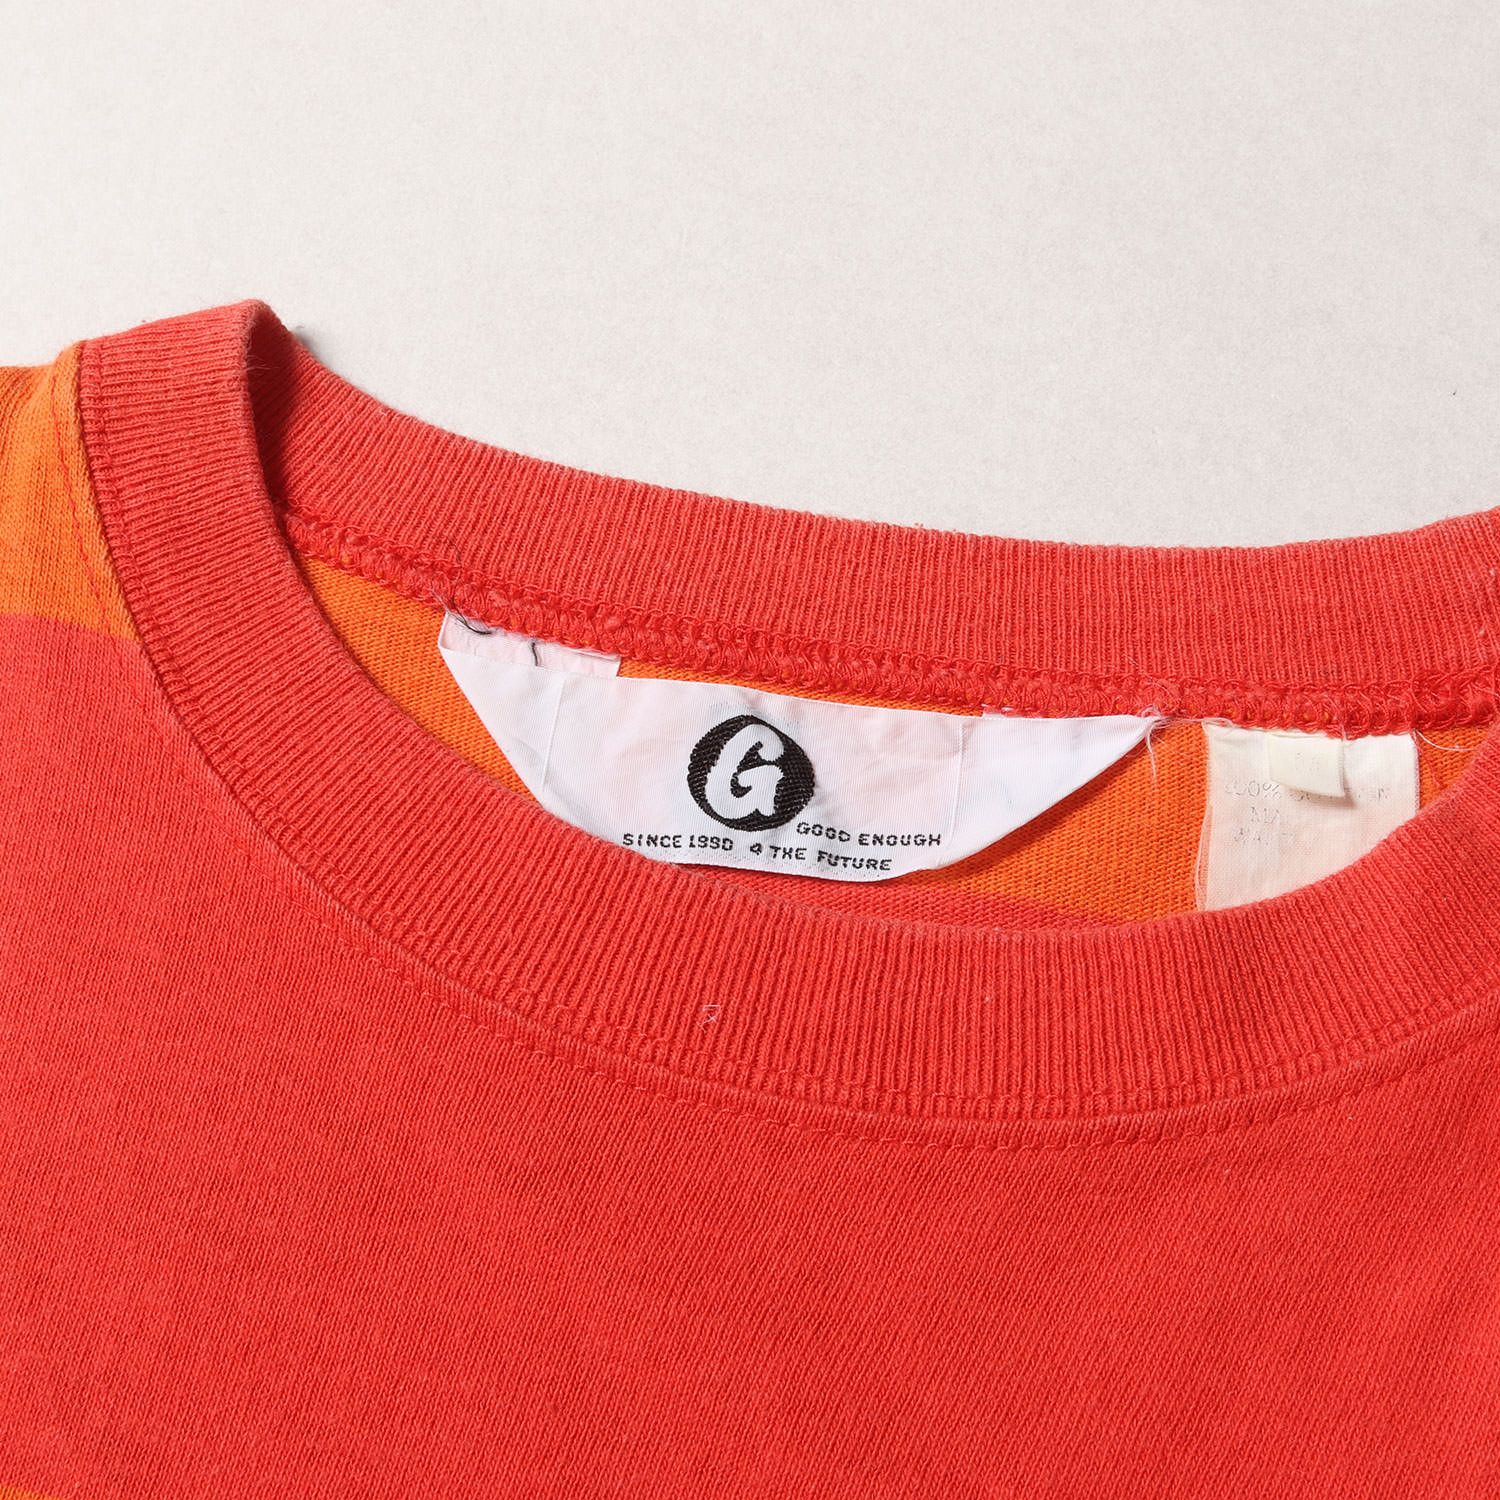 GOOD ENOUGH グッドイナフ Tシャツ サイズ:M Gプリント ワイドボーダー クルーネック コットン 97年 オレンジ レッド トップス  カットソー 半袖 ストリート ブランド カジュアル